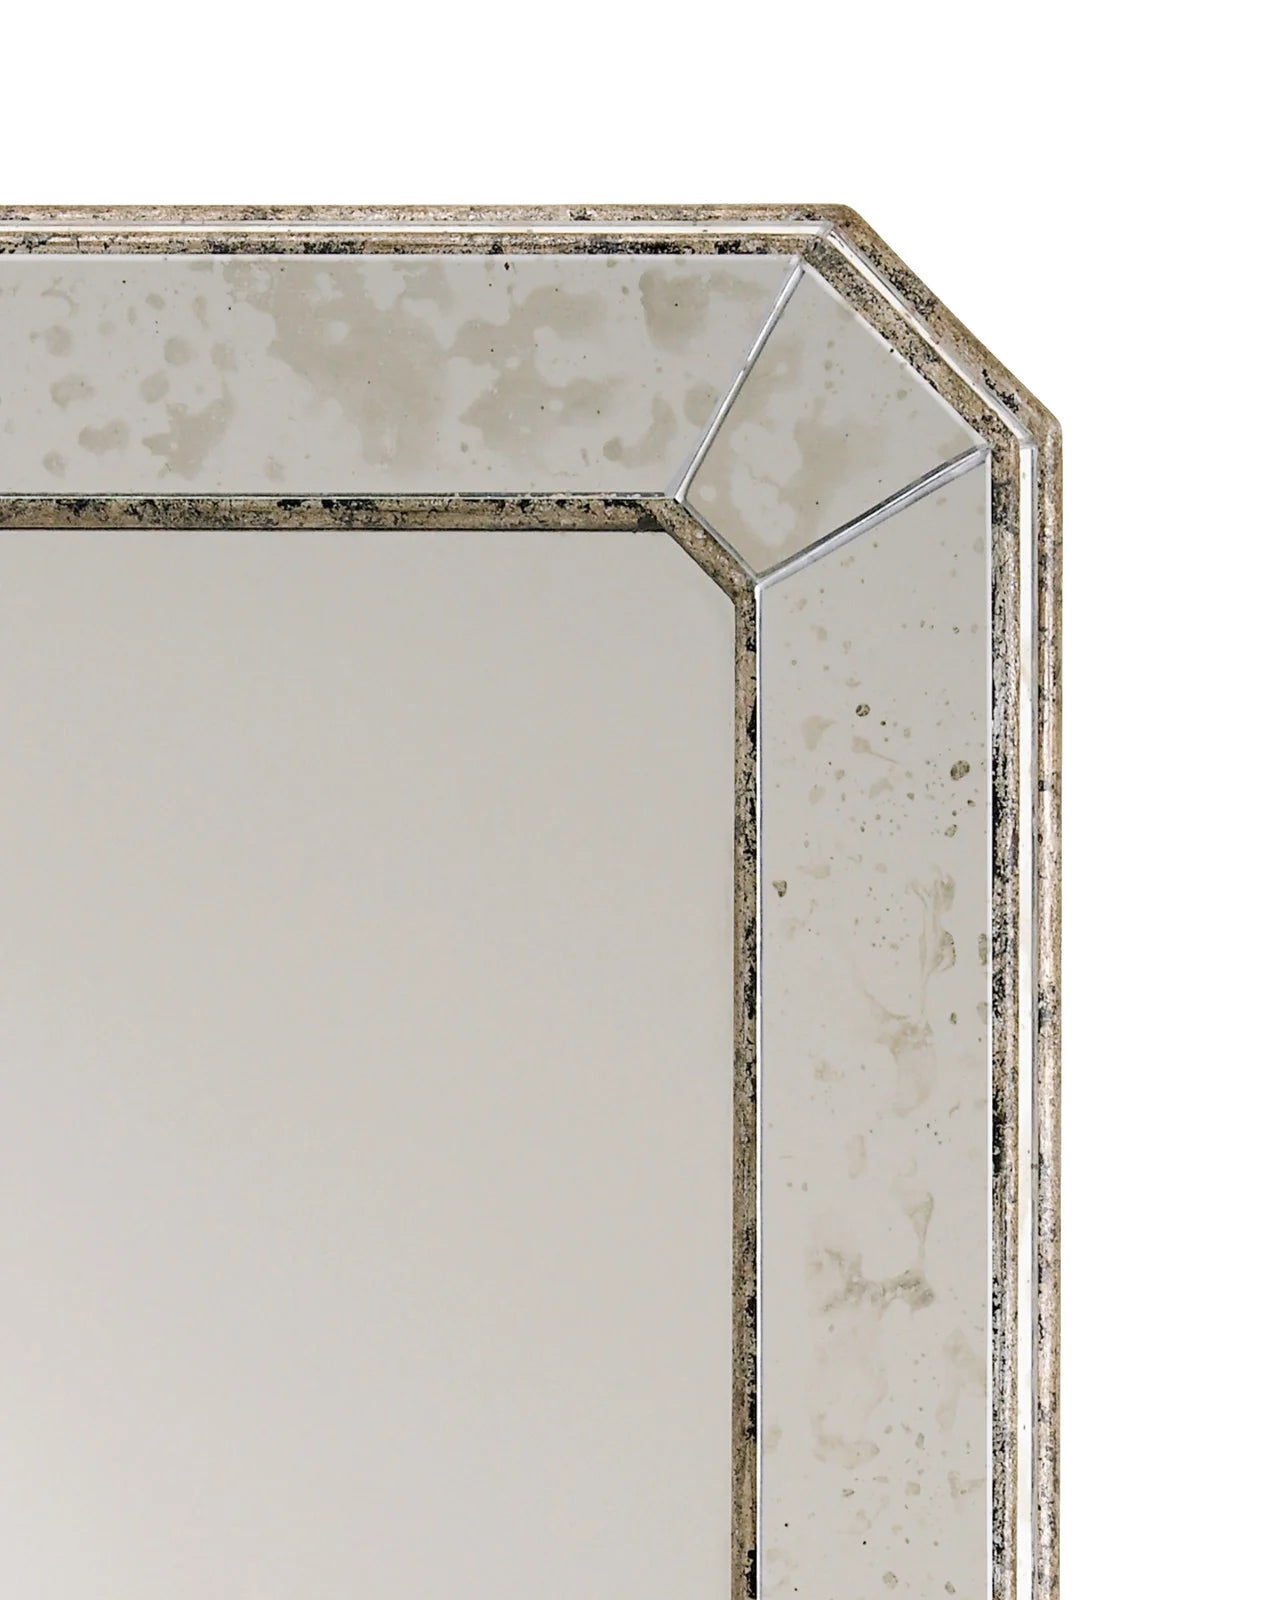 Antiqued Rectangular Mirror